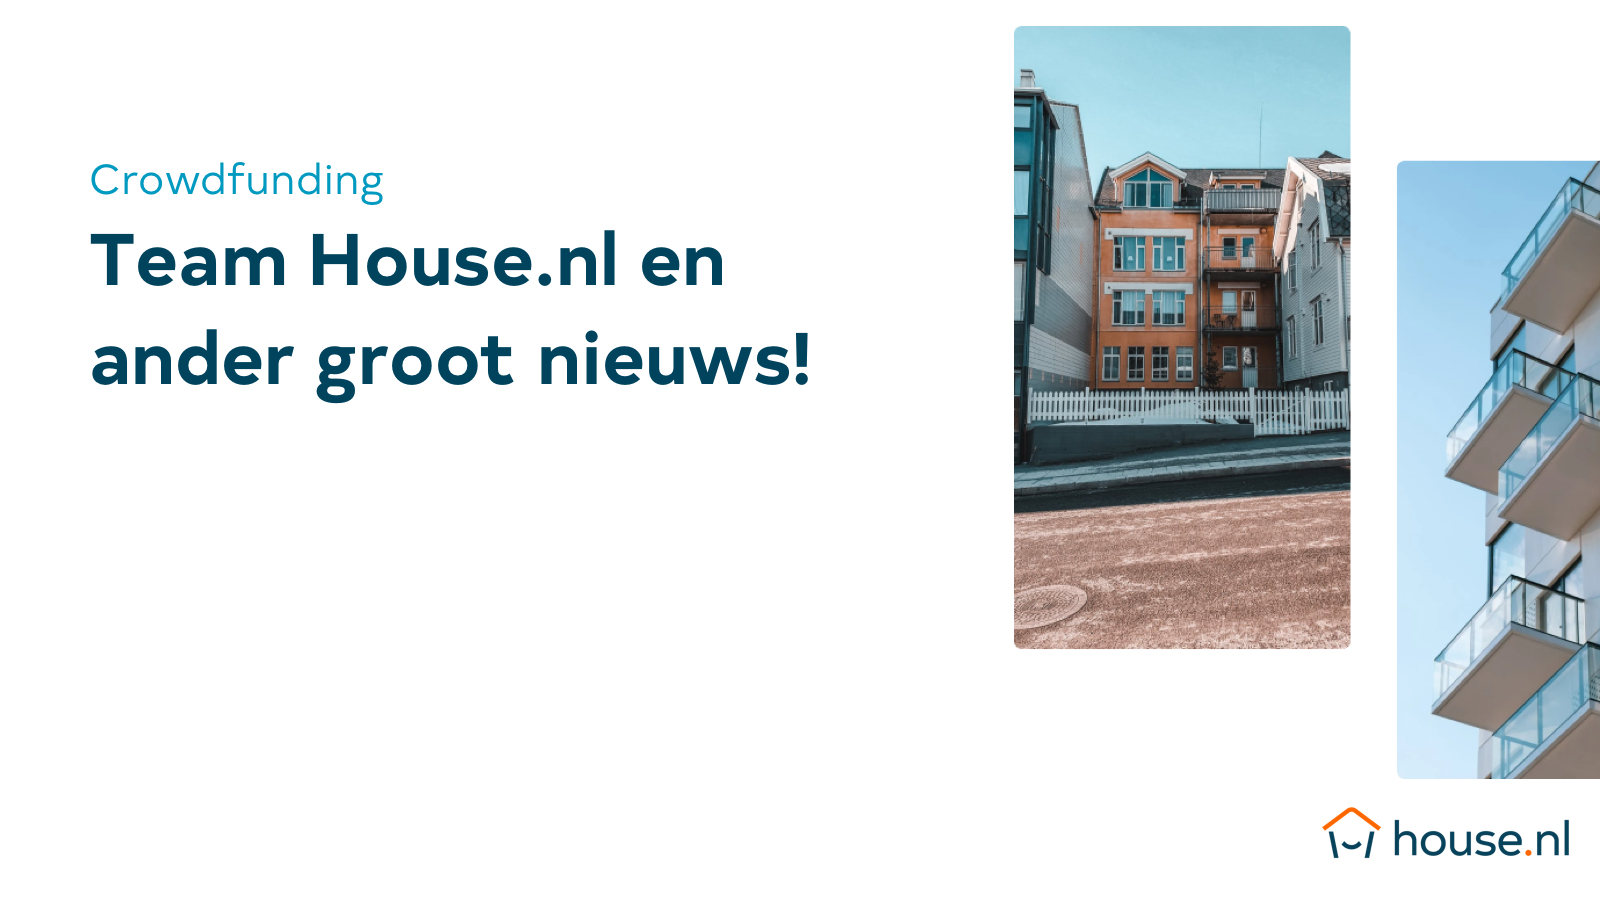 Team House.nl en ander groot nieuws!